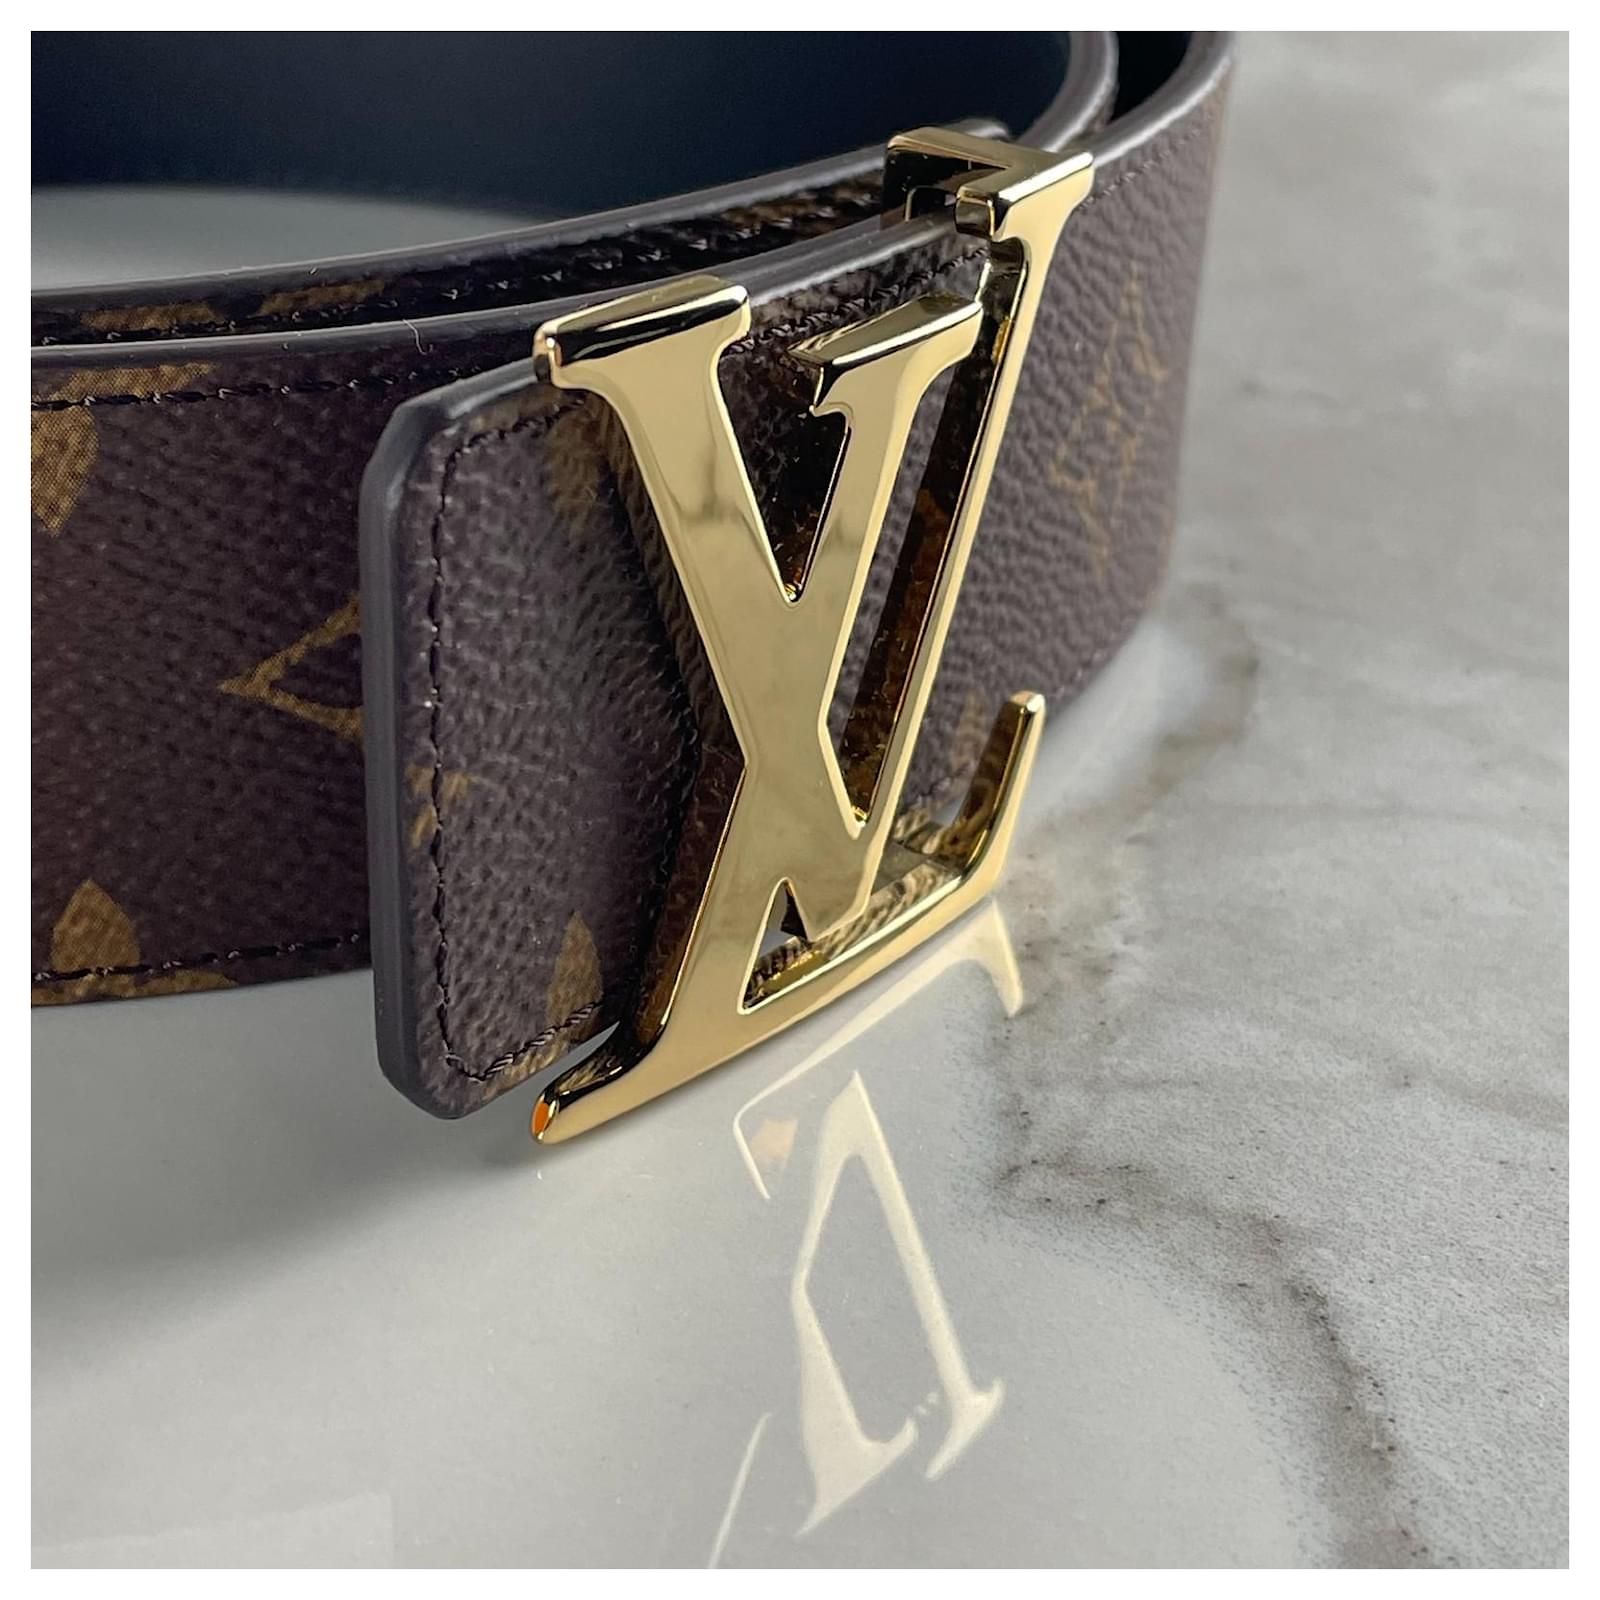 Louis Vuitton - LV Line 40mm Reversible Belt - Monogram Canvas - Brown - Size: 90 cm - Luxury